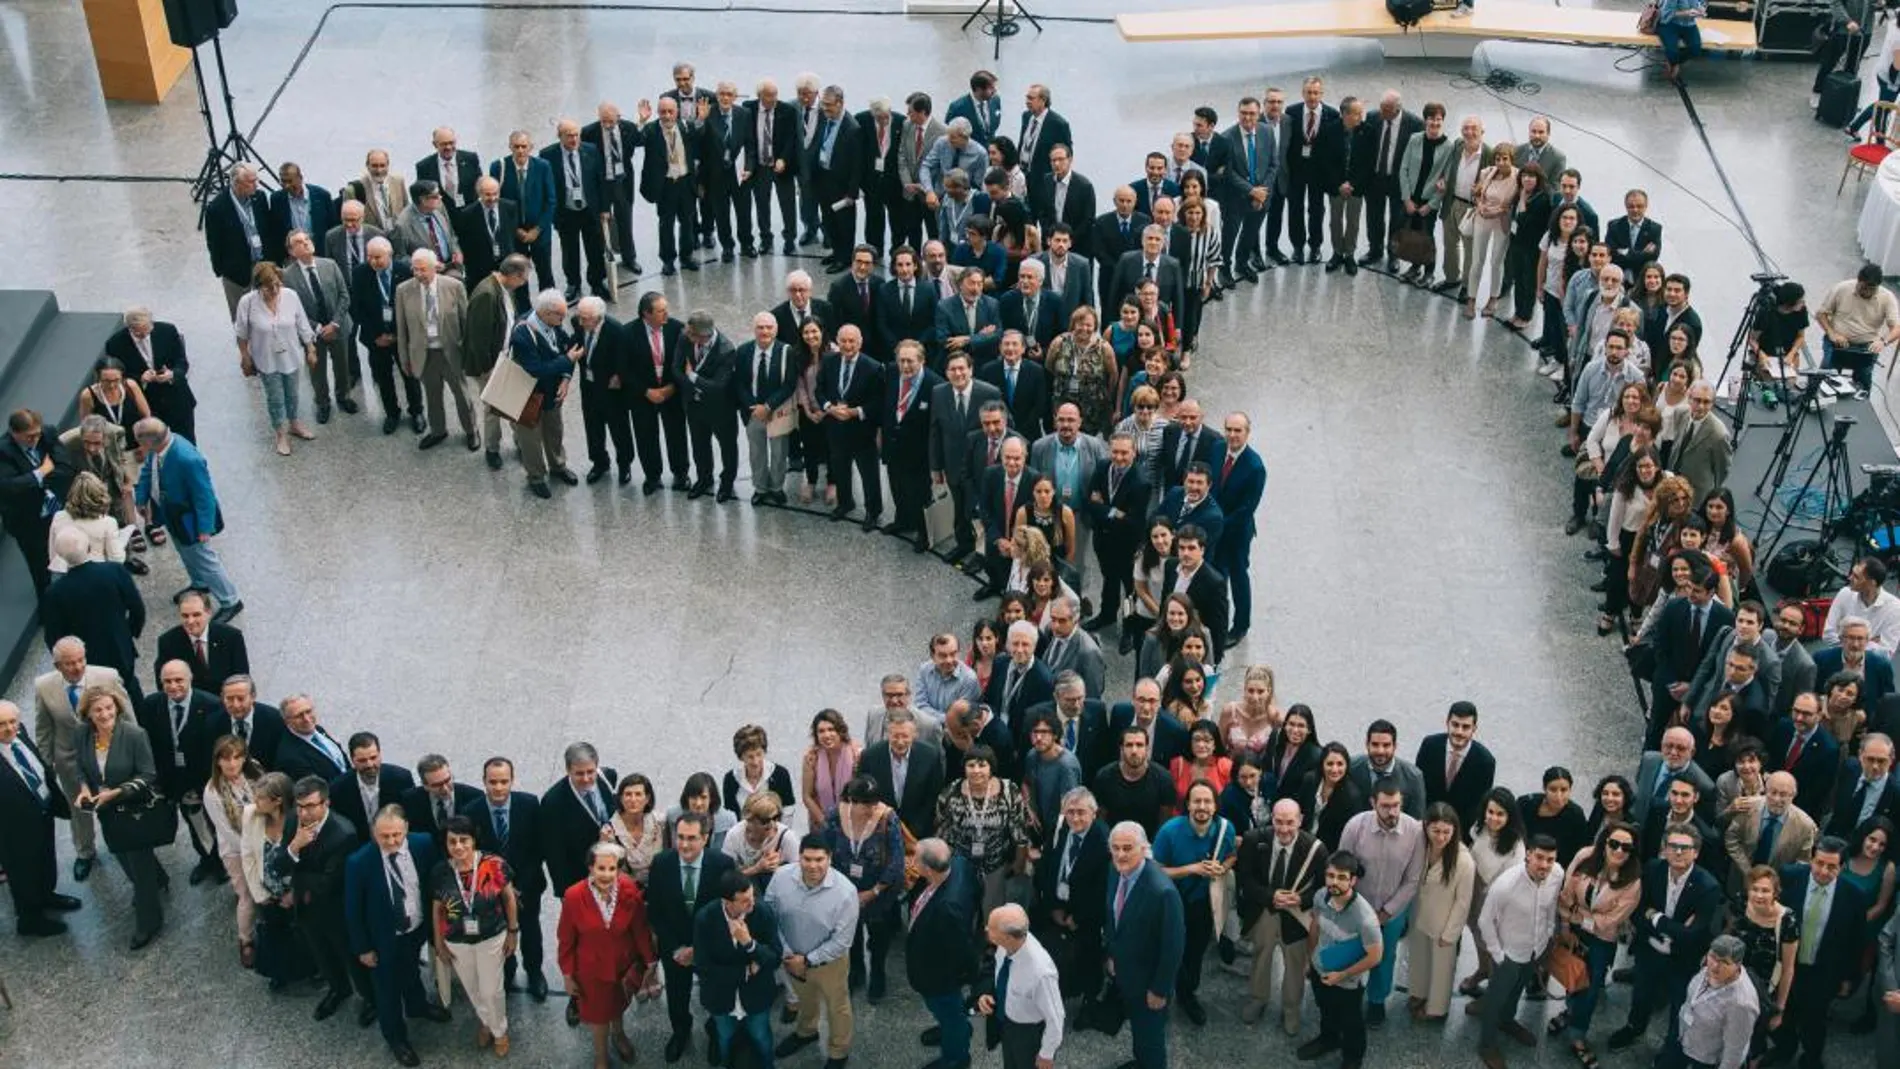 Los jurados de los Premios Jaume I, entre ellos 18 Premios Nobel, posaron tras la lectura del manifiesto en el treinta aniversario de estos galardones (KIKE TABERNER)